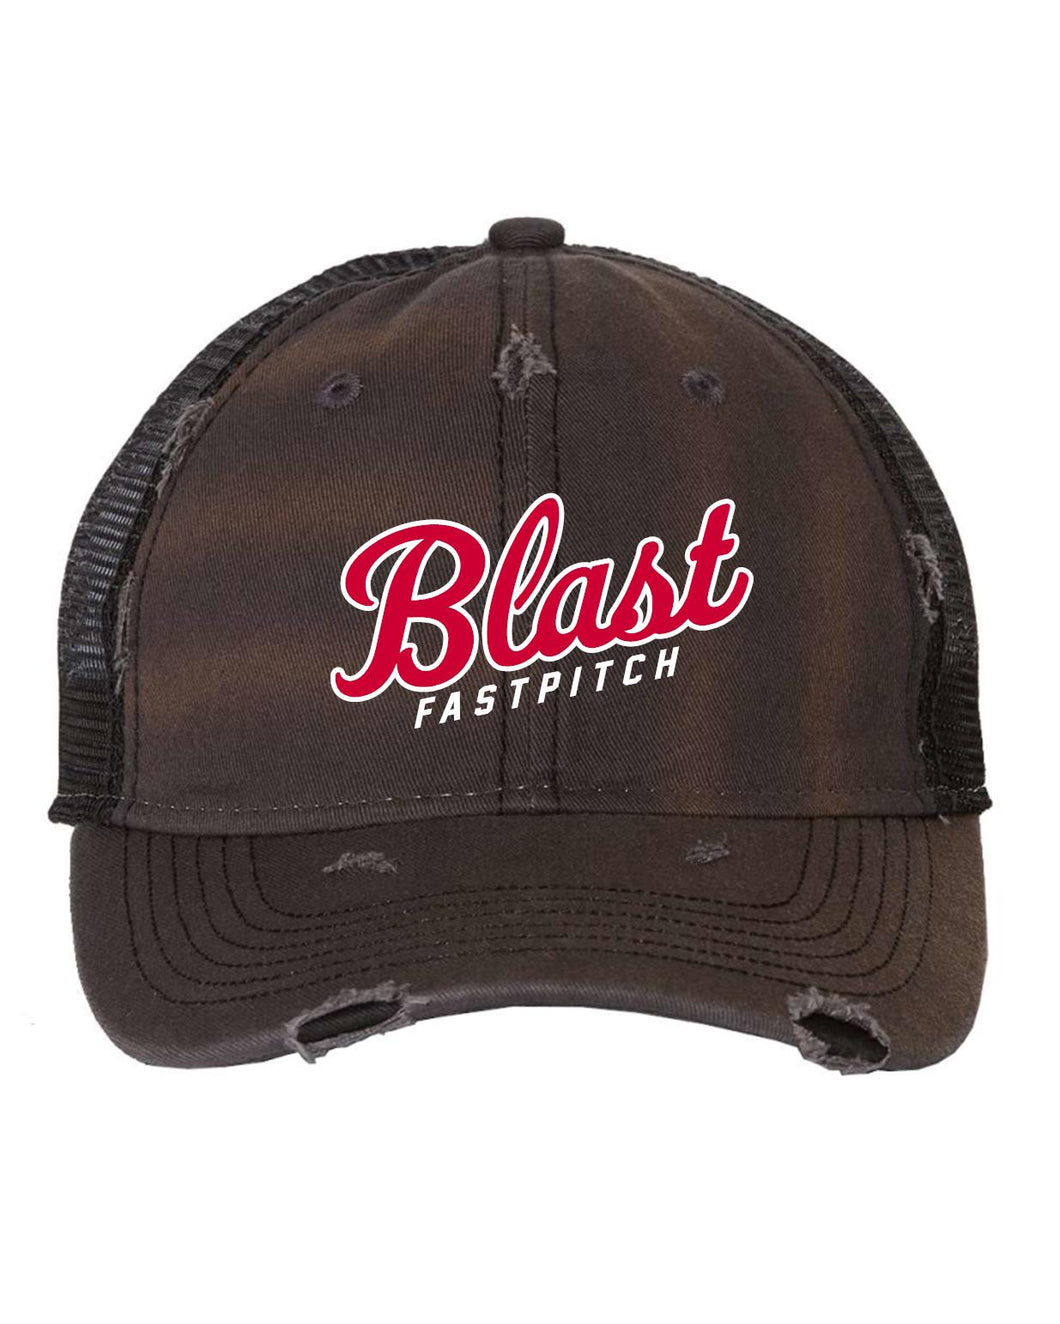 Blast Unstructured adjustable hat